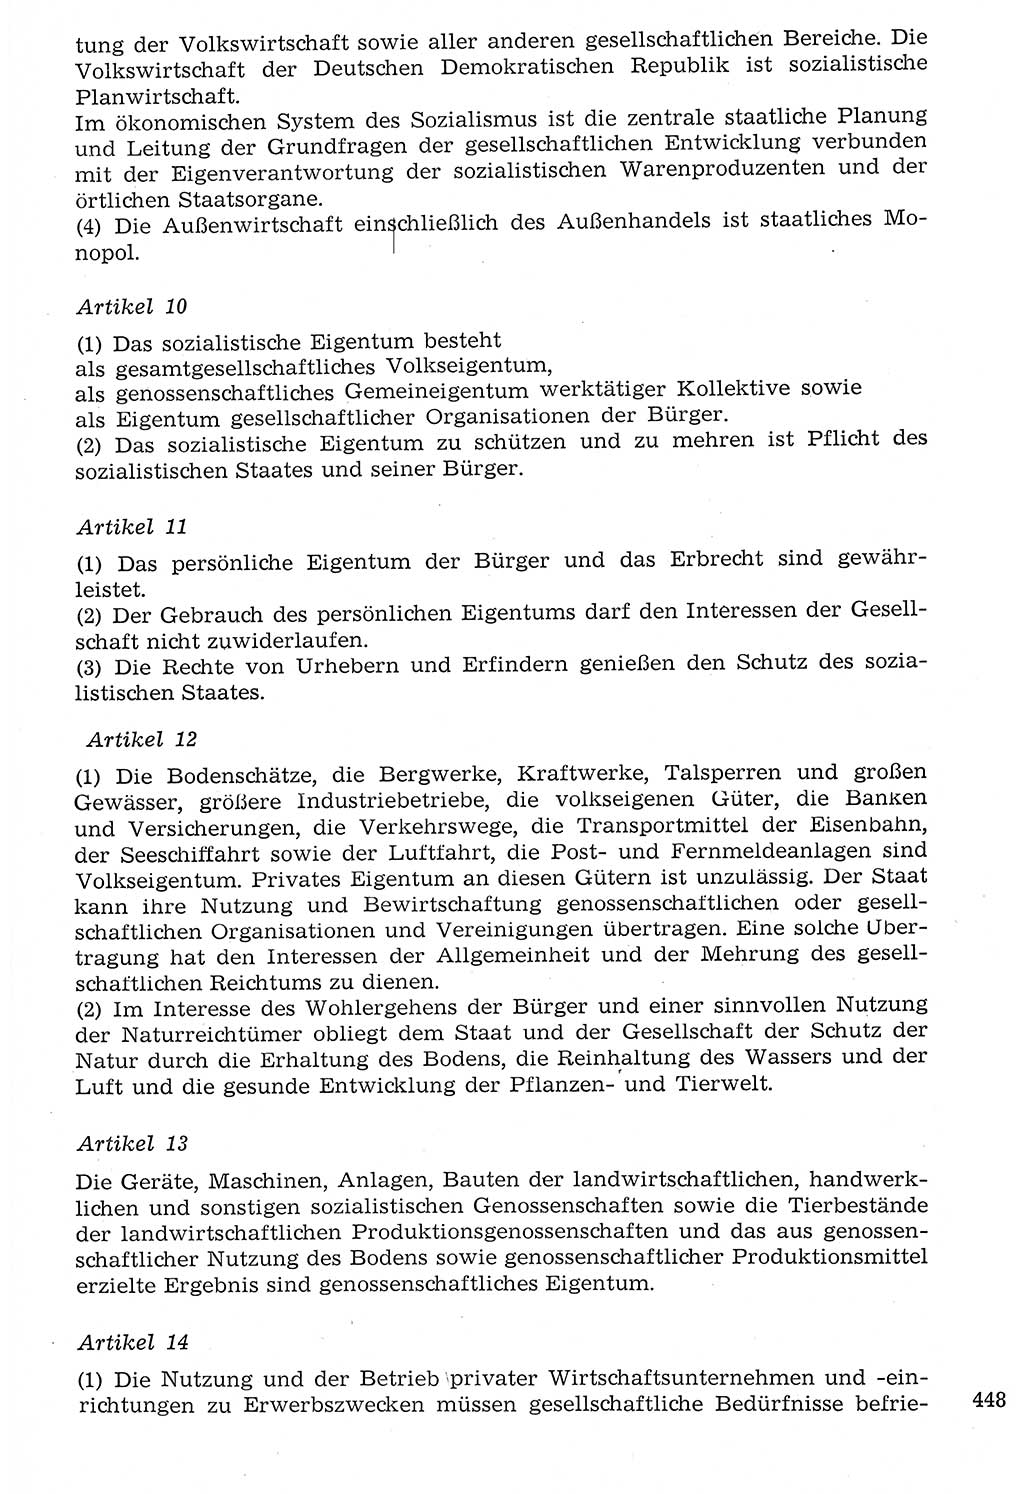 Staat und Recht (StuR), 17. Jahrgang [Deutsche Demokratische Republik (DDR)] 1968, Seite 448 (StuR DDR 1968, S. 448)